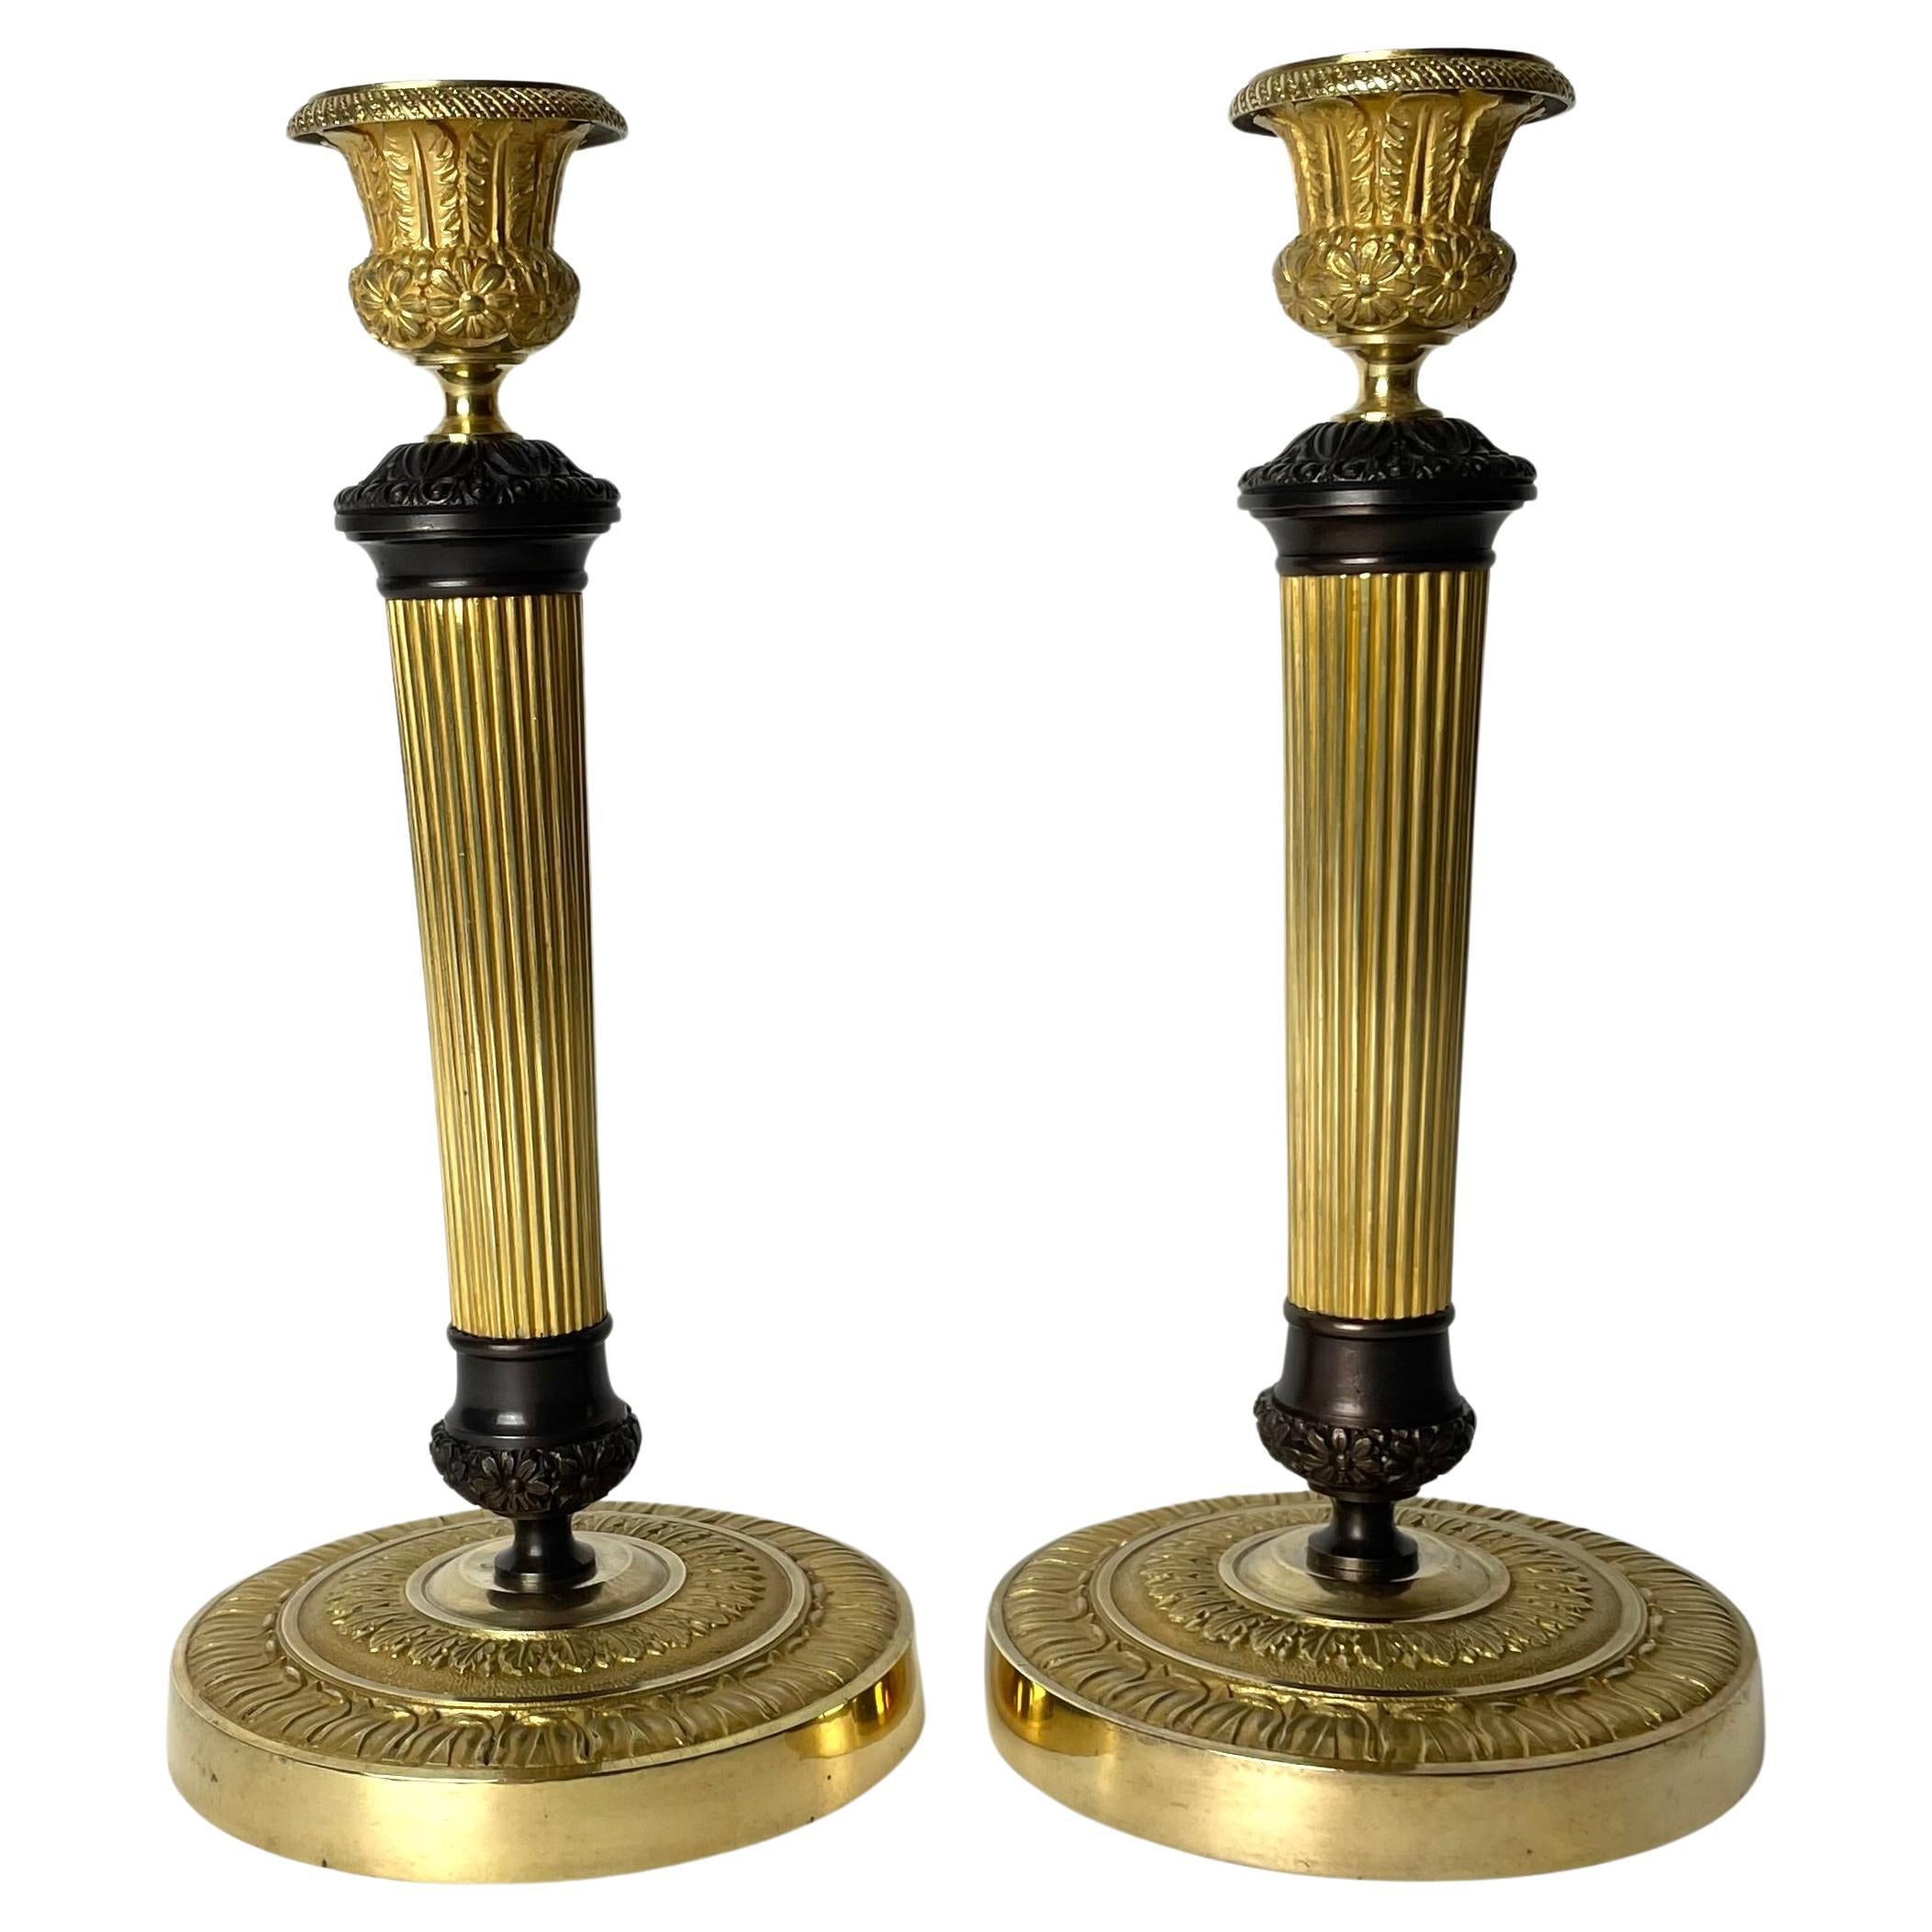 Belle paire de chandeliers Empire en bronze doré et patiné foncé, années 1820